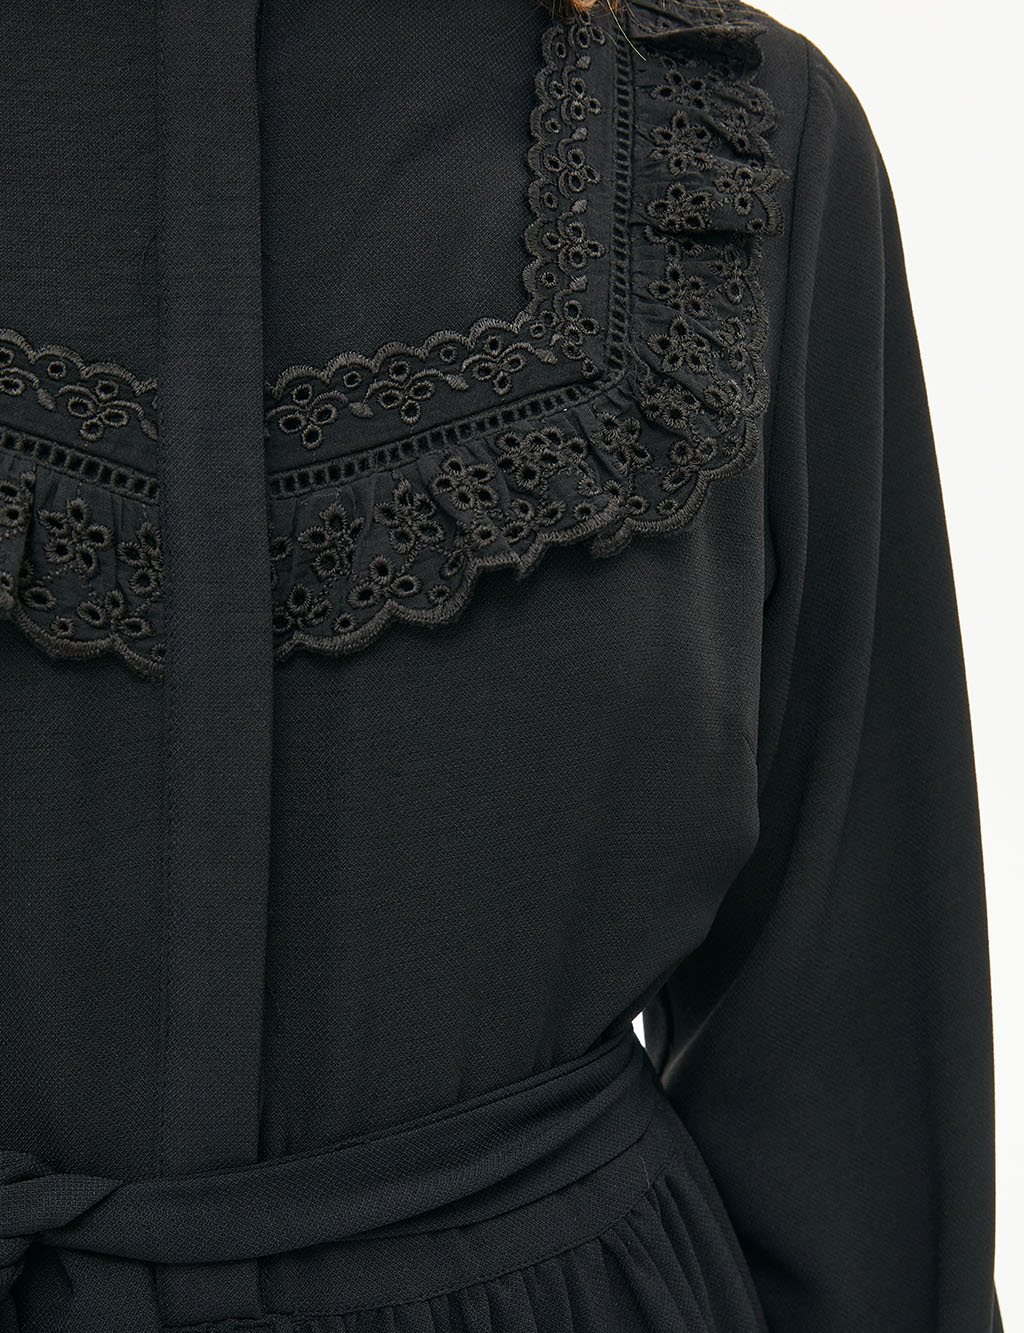 KYR Scalloped Full Length Dress Black